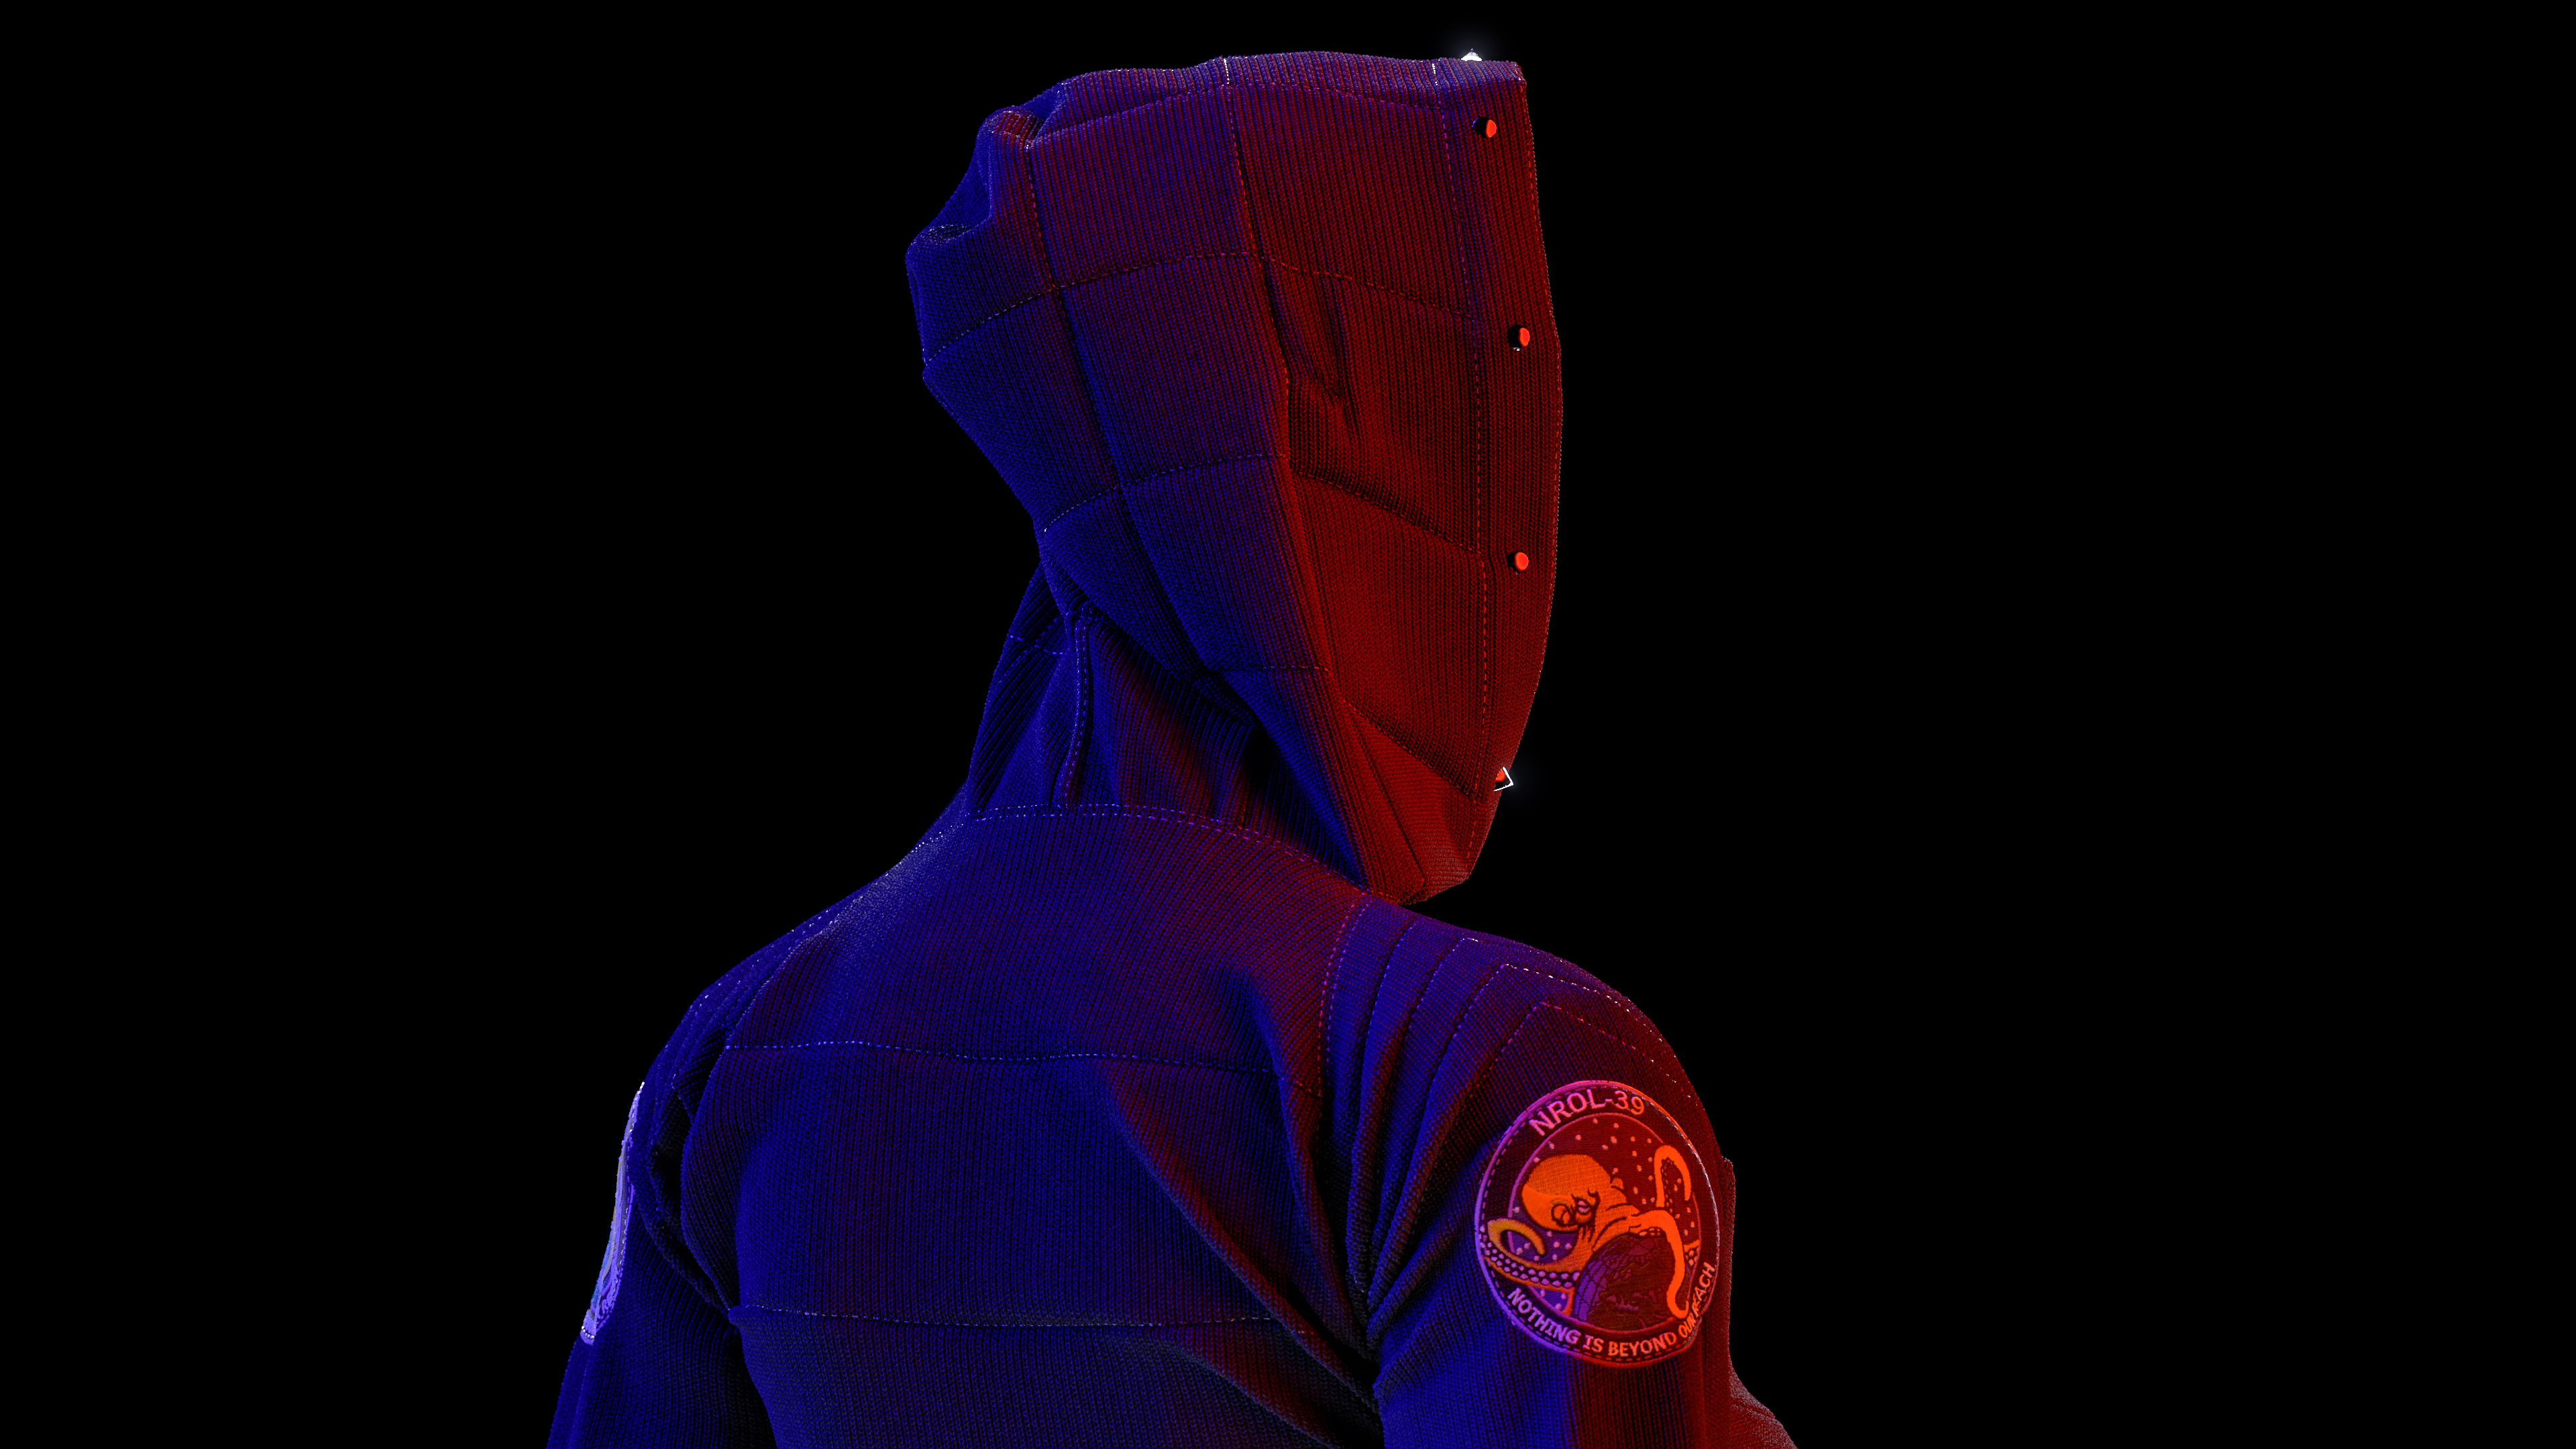 Digital Neon Patch Cotton Hoods Portrait Rendering Render Ghost Hacking 3840x2160